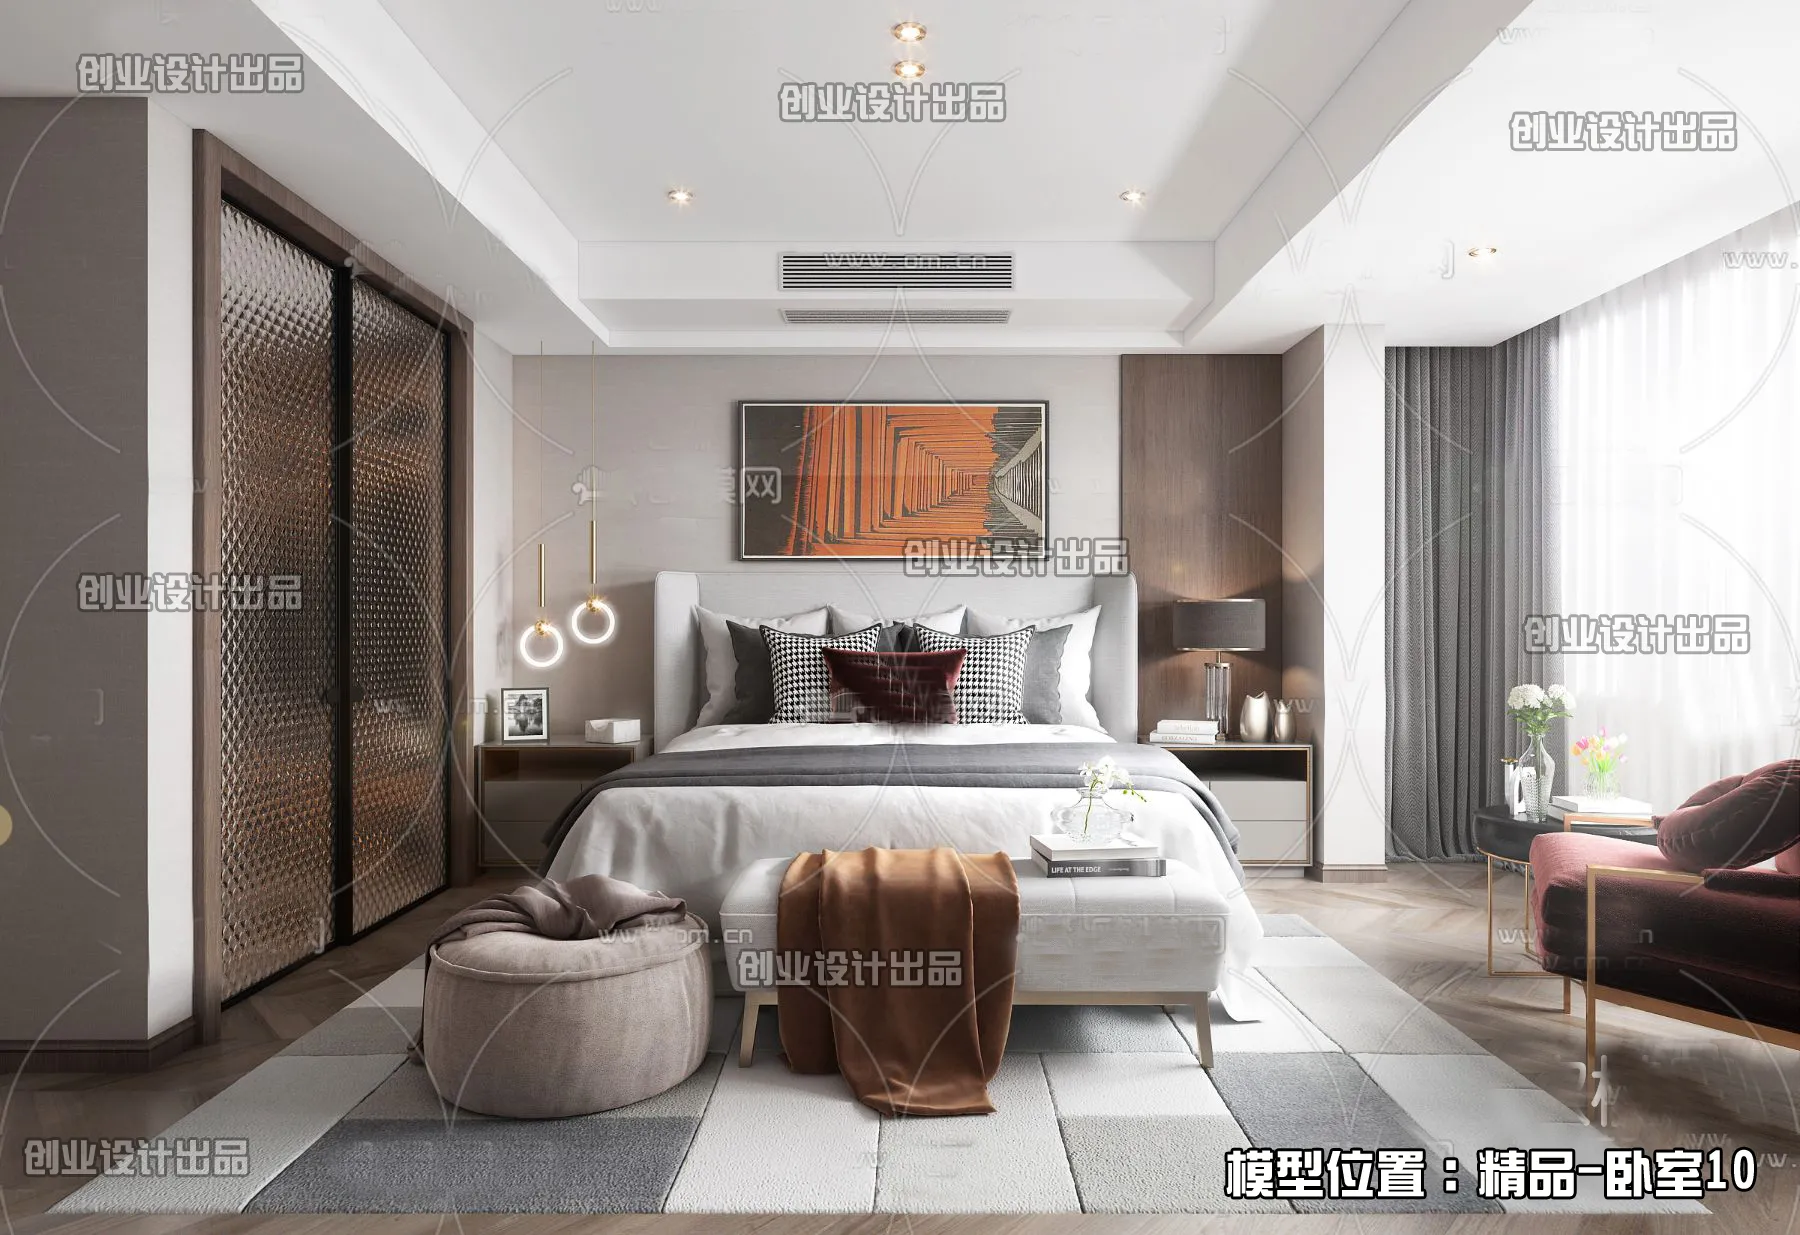 Bedroom – Modern Interior Design – 3D Models – 082